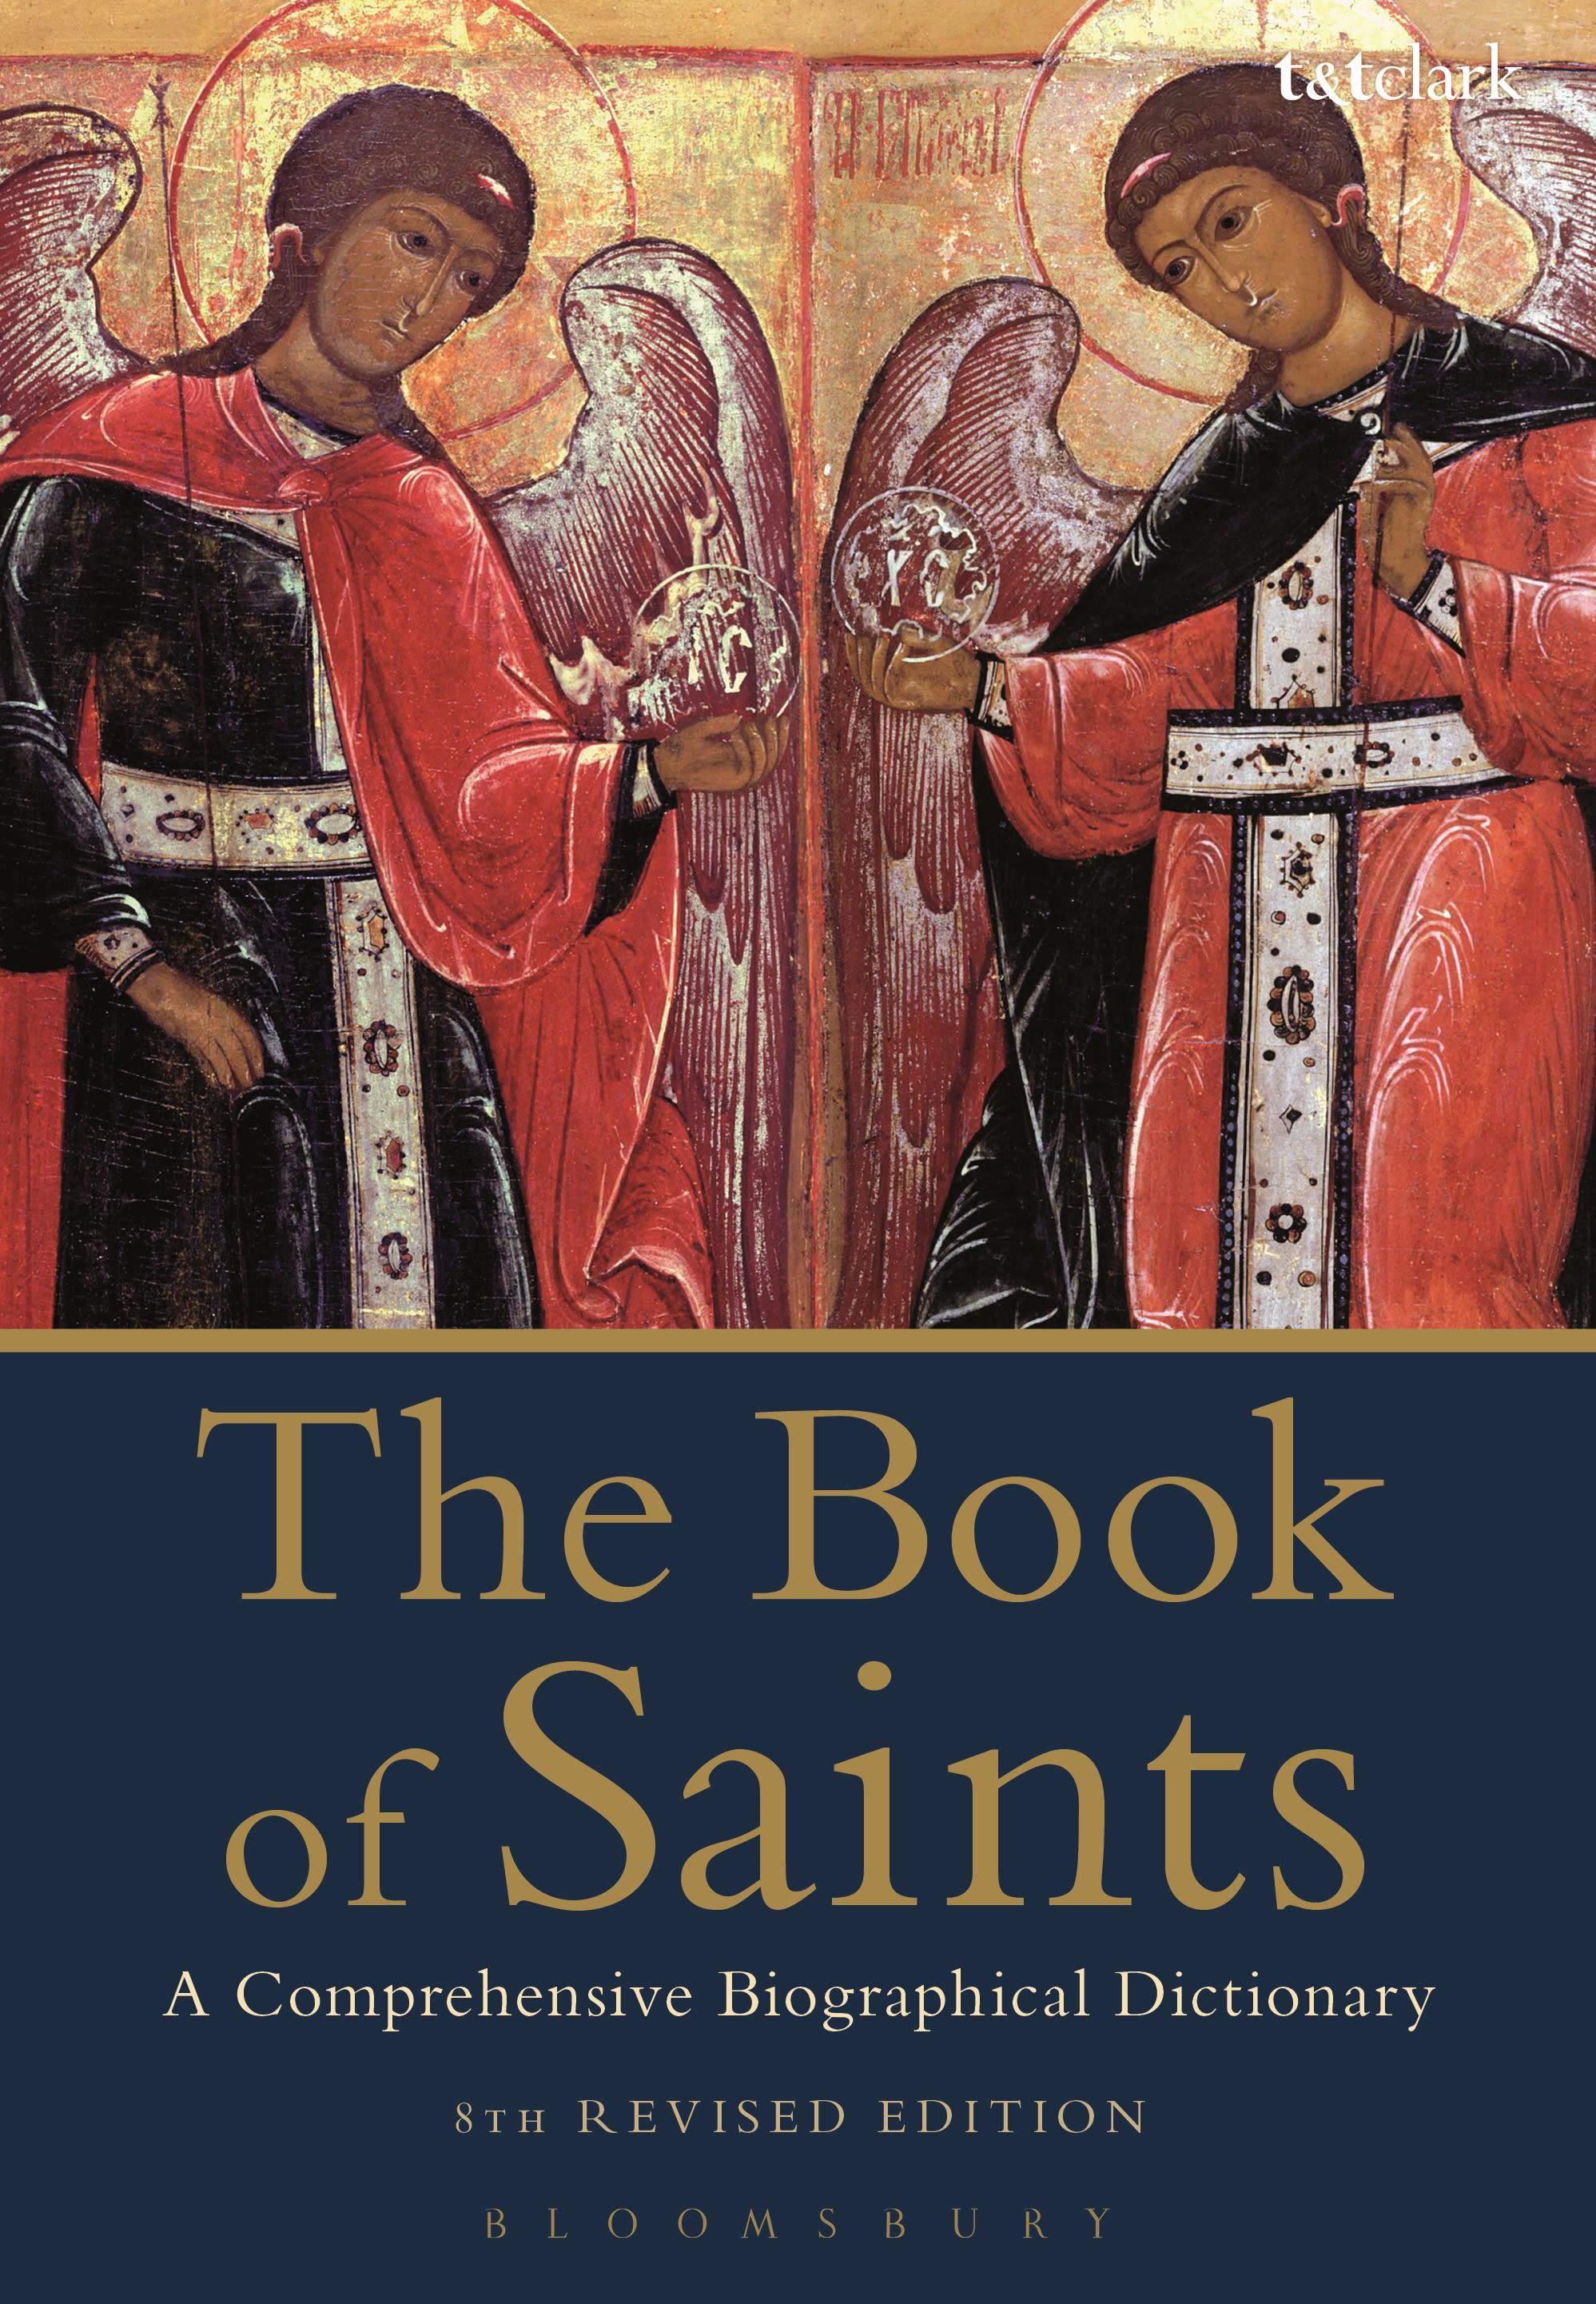 The Book of Saints / A Comprehensive Biographical Dictionary / Basil Watkins / Taschenbuch / Kartoniert / Broschiert / Englisch / 2015 / Bloomsbury Publishing PLC / EAN 9780567664563 - Watkins, Basil